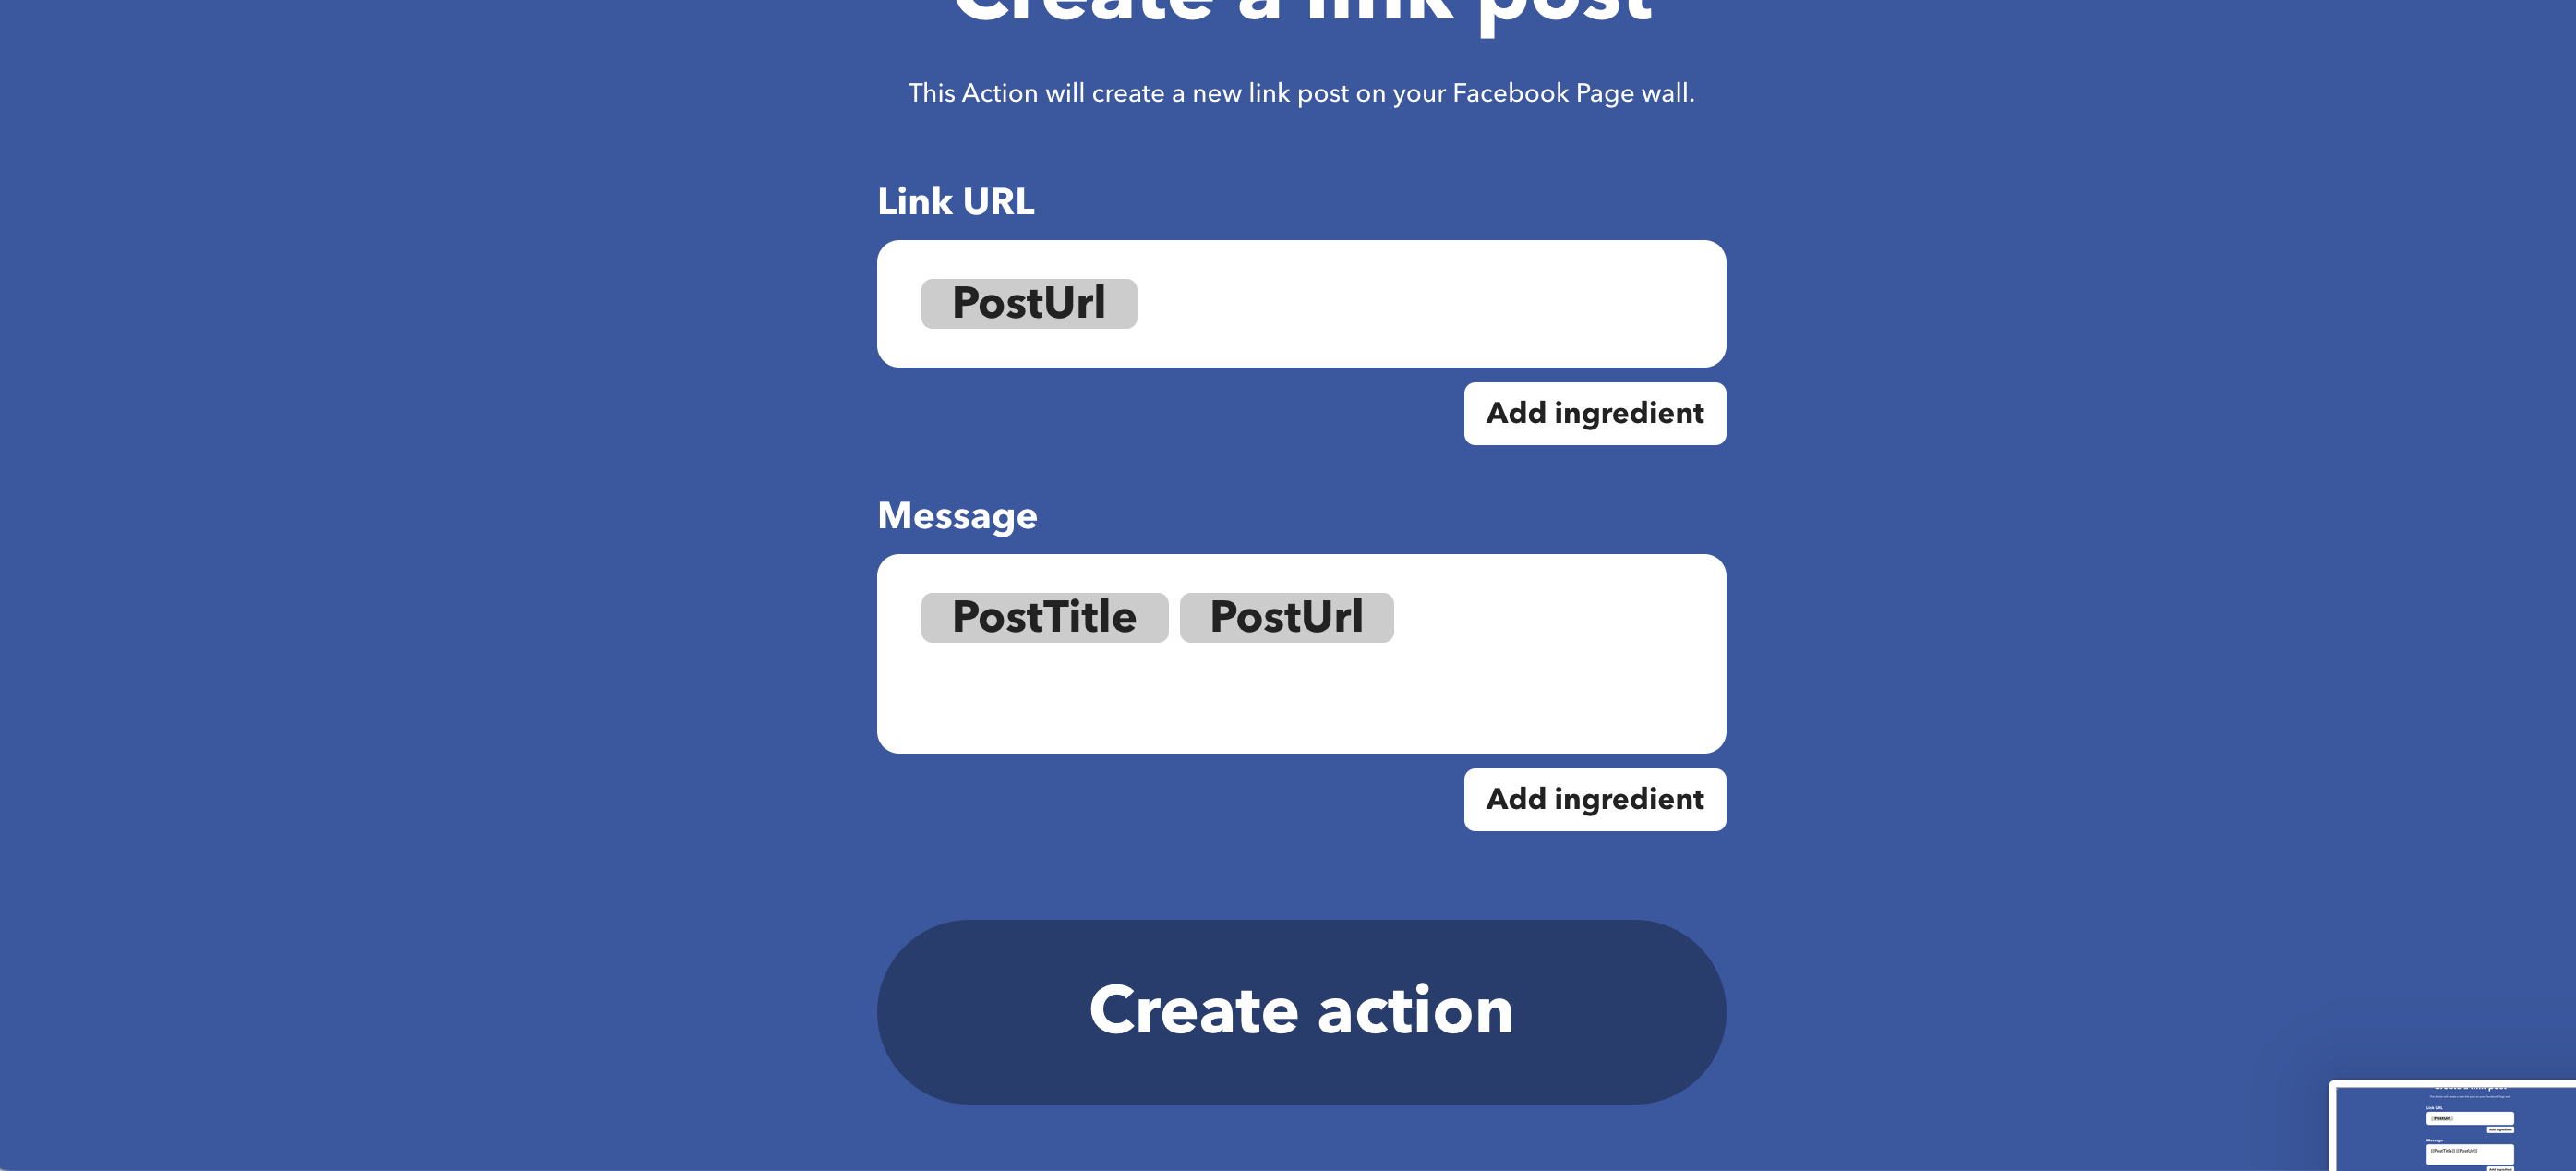 下の「Create action」をクリック